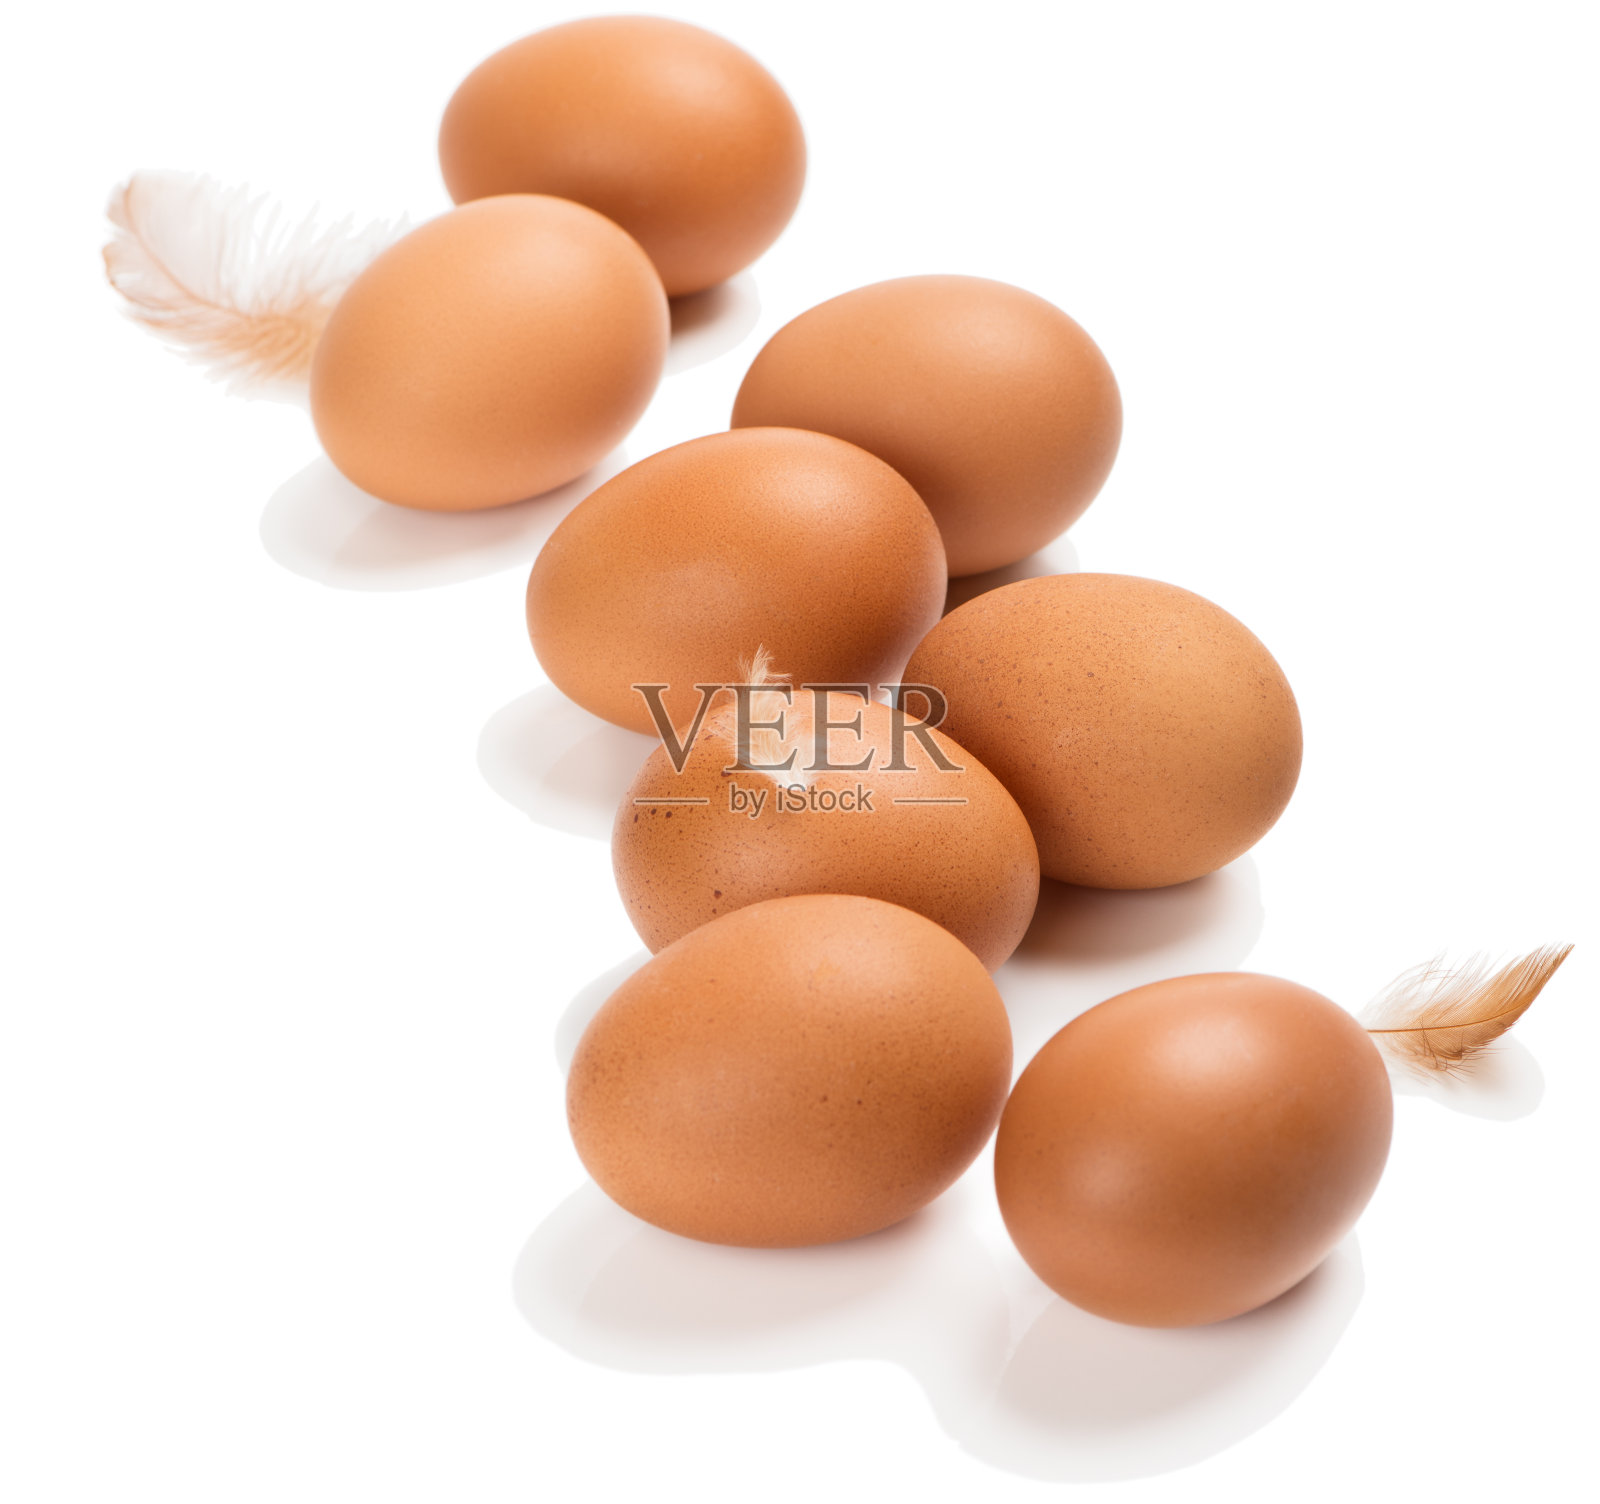 Eight chicken eggs照片摄影图片